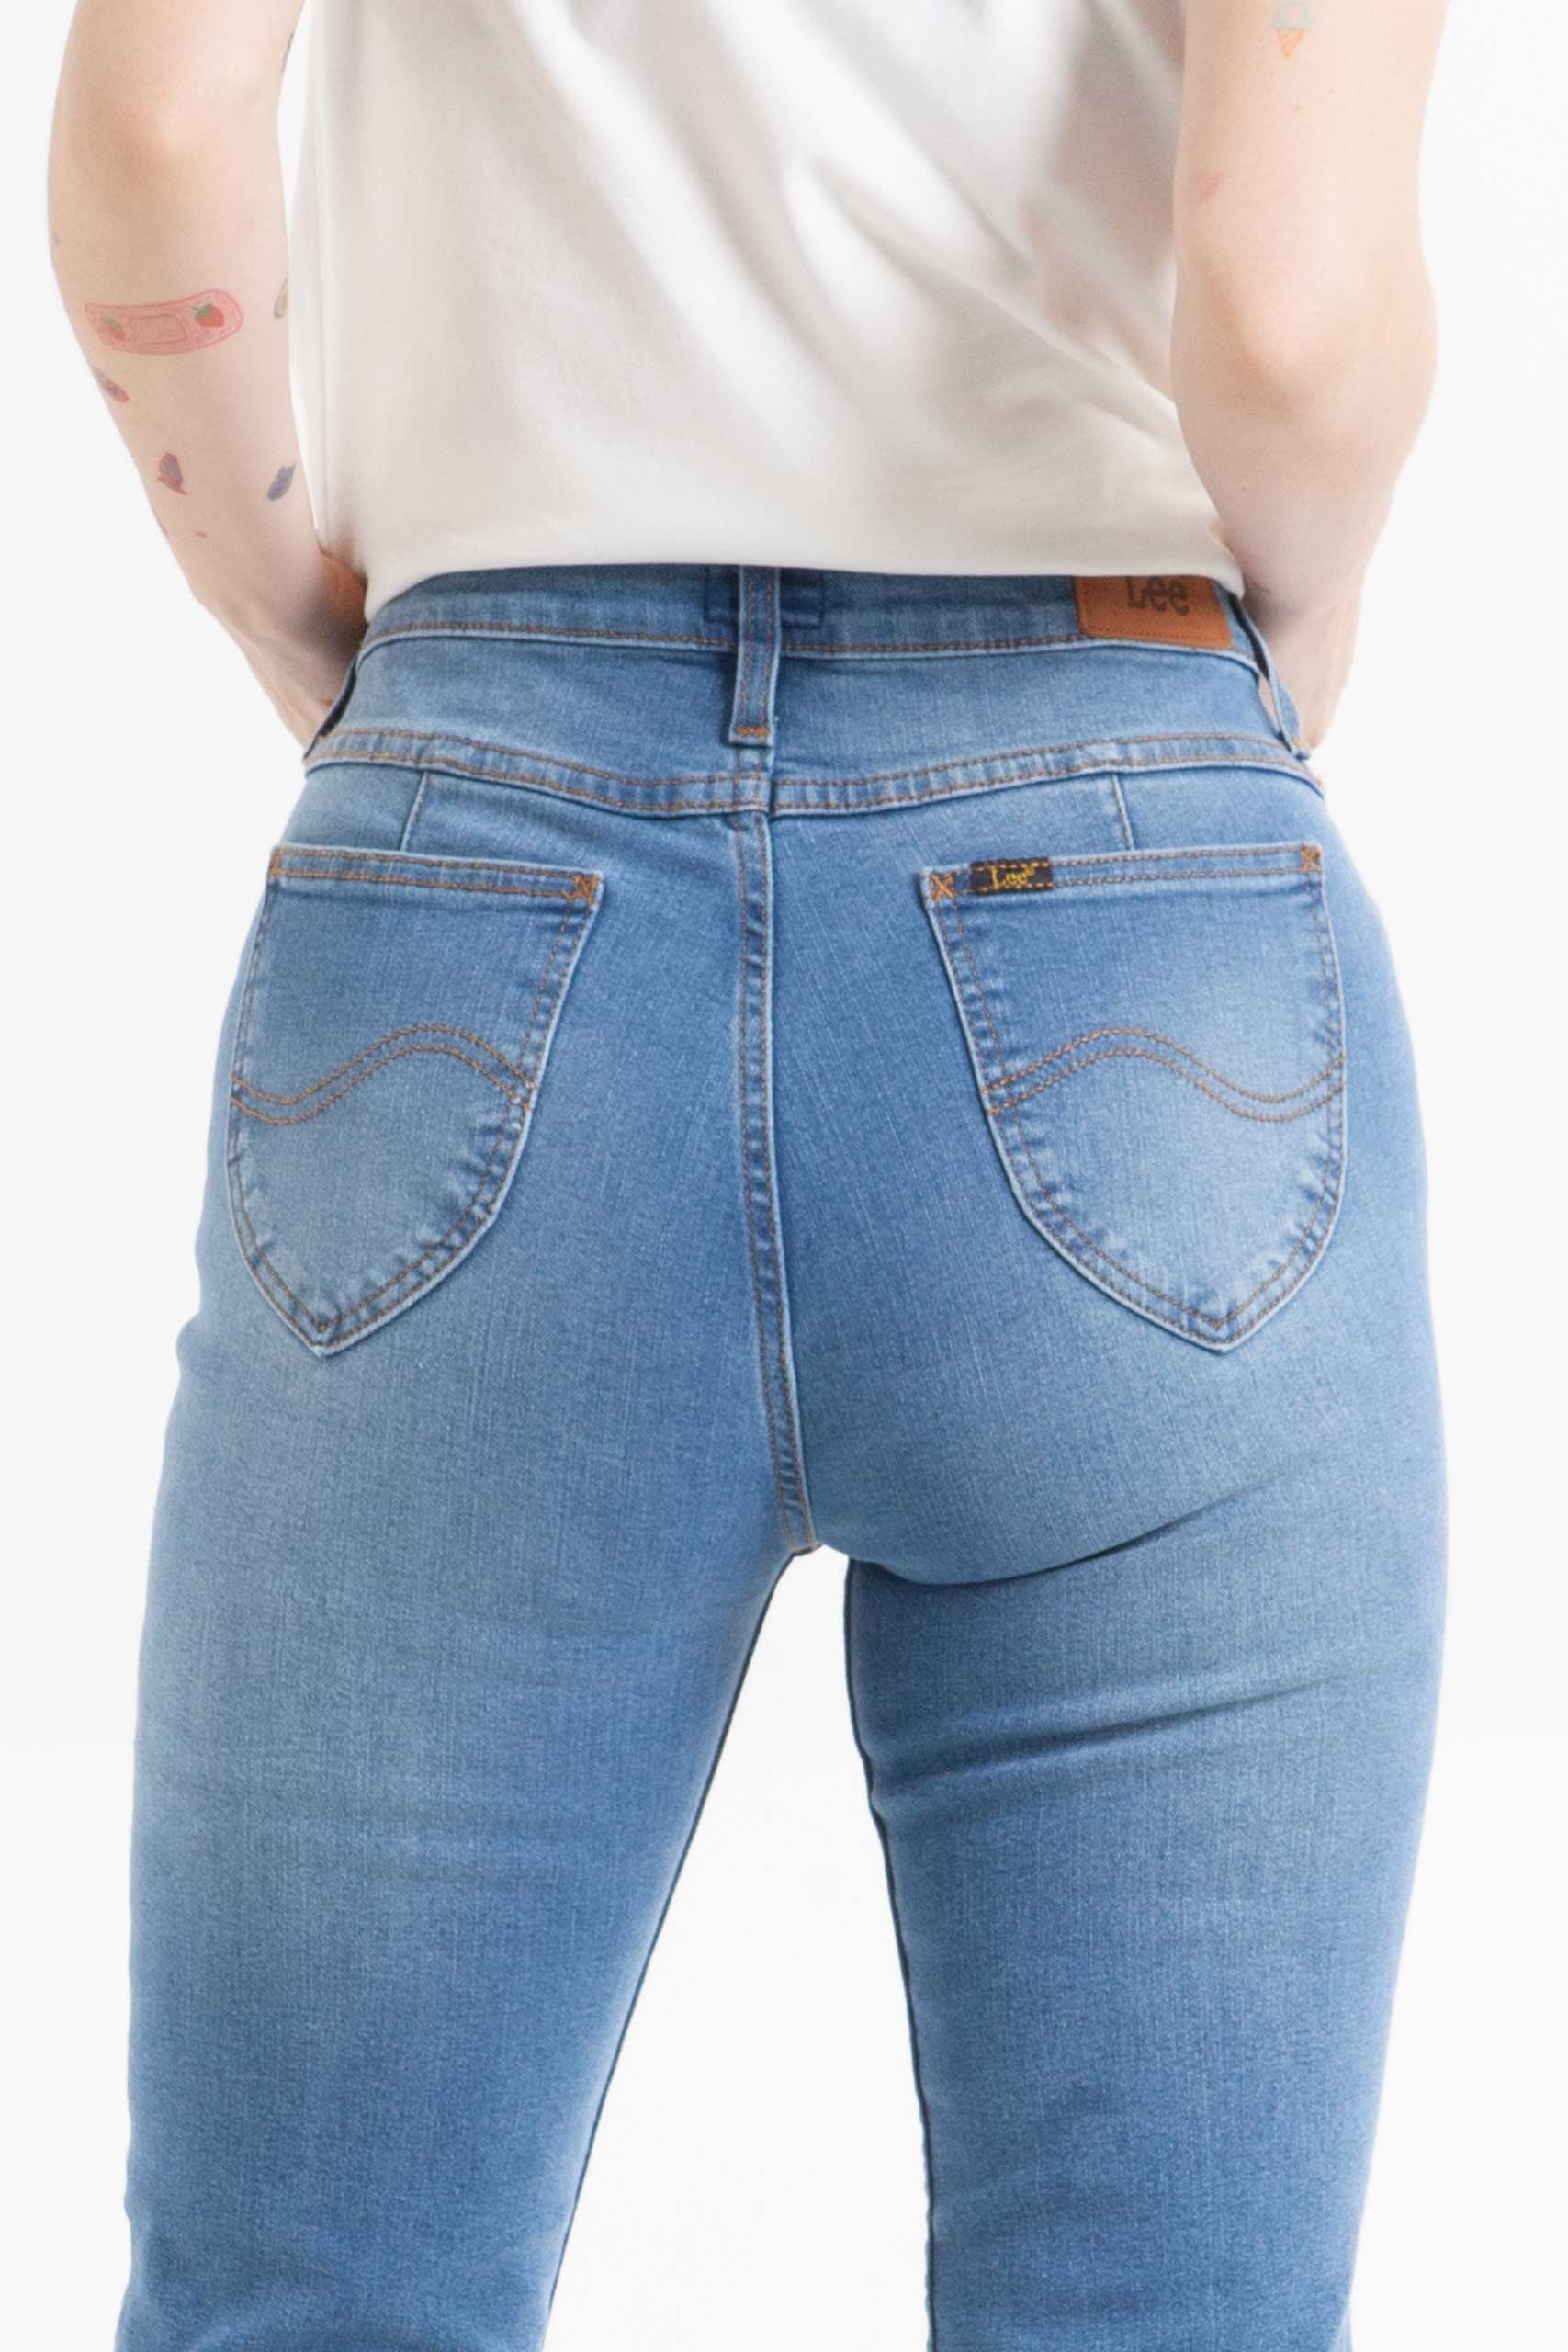 Vista Posterior de jean color azul de pierna recta de marca lee.